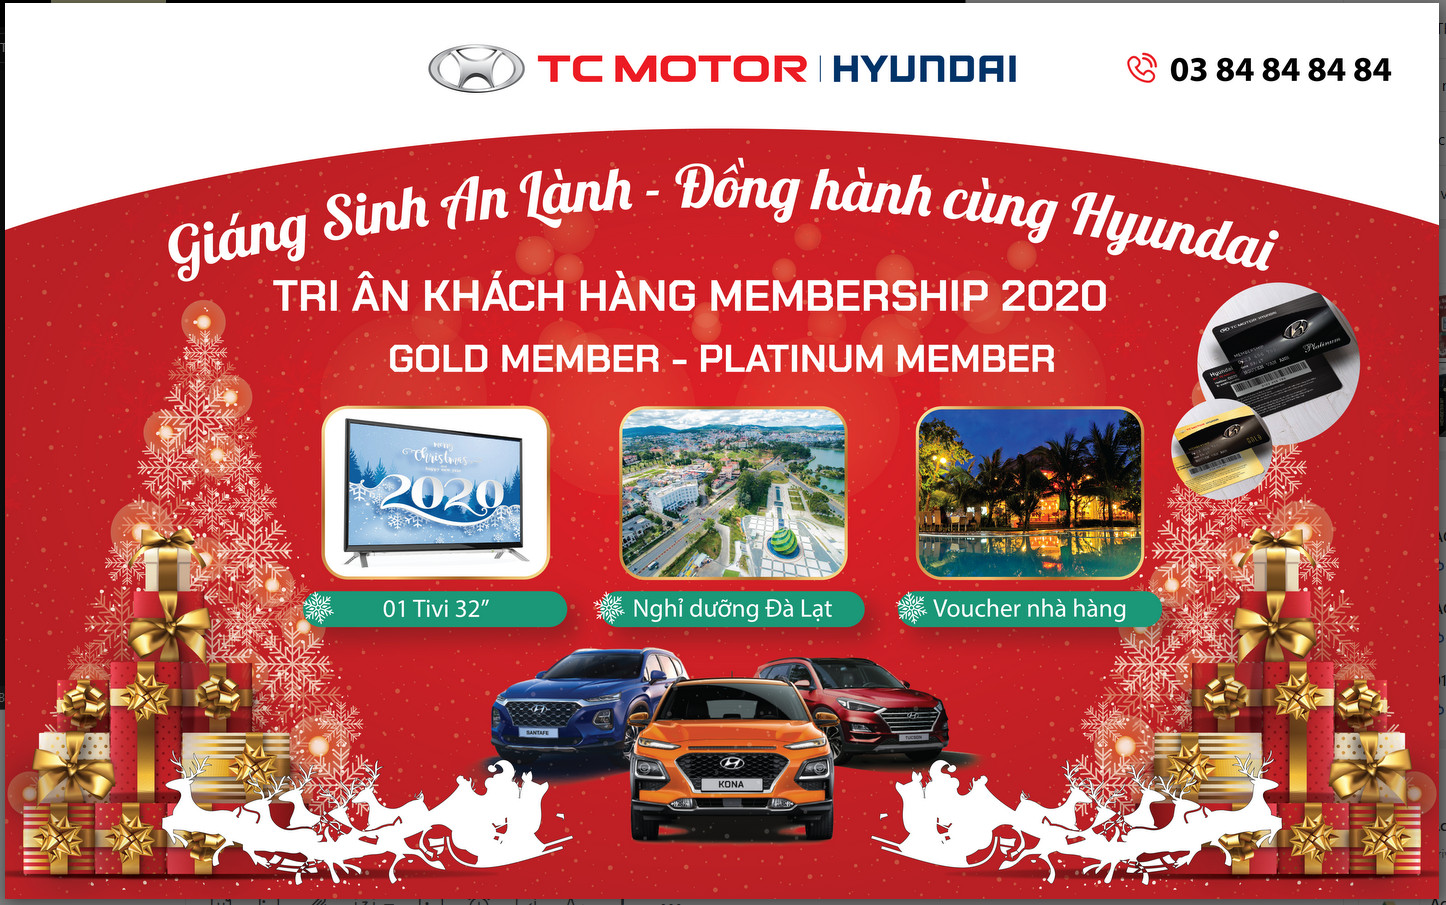 Giáng Sinh An Lành - Đồng Hành Cùng Hyundai